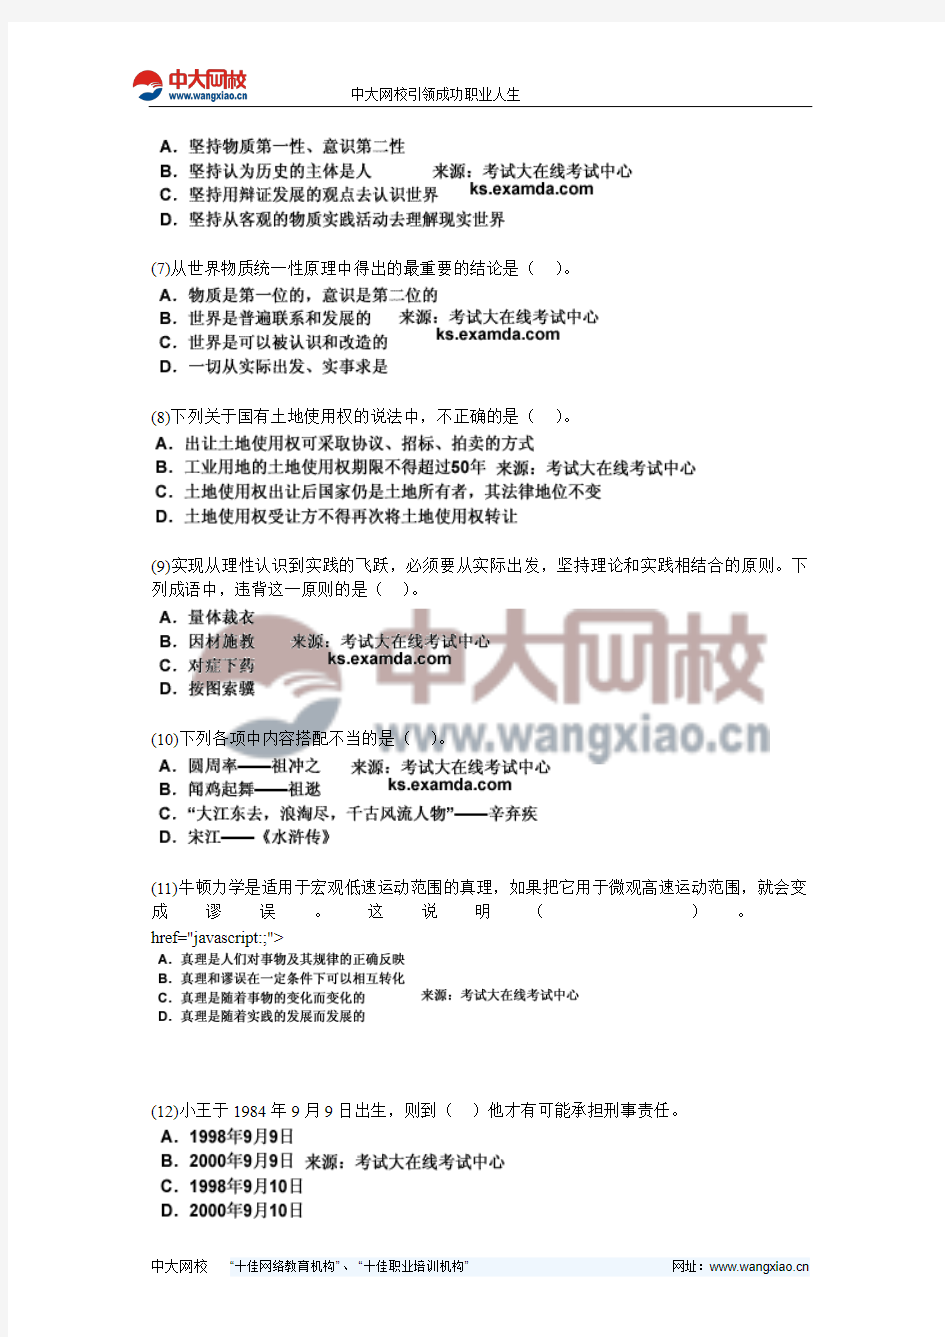 2011年西藏公务员考试《行测》标准预测试卷(5)-中大网校